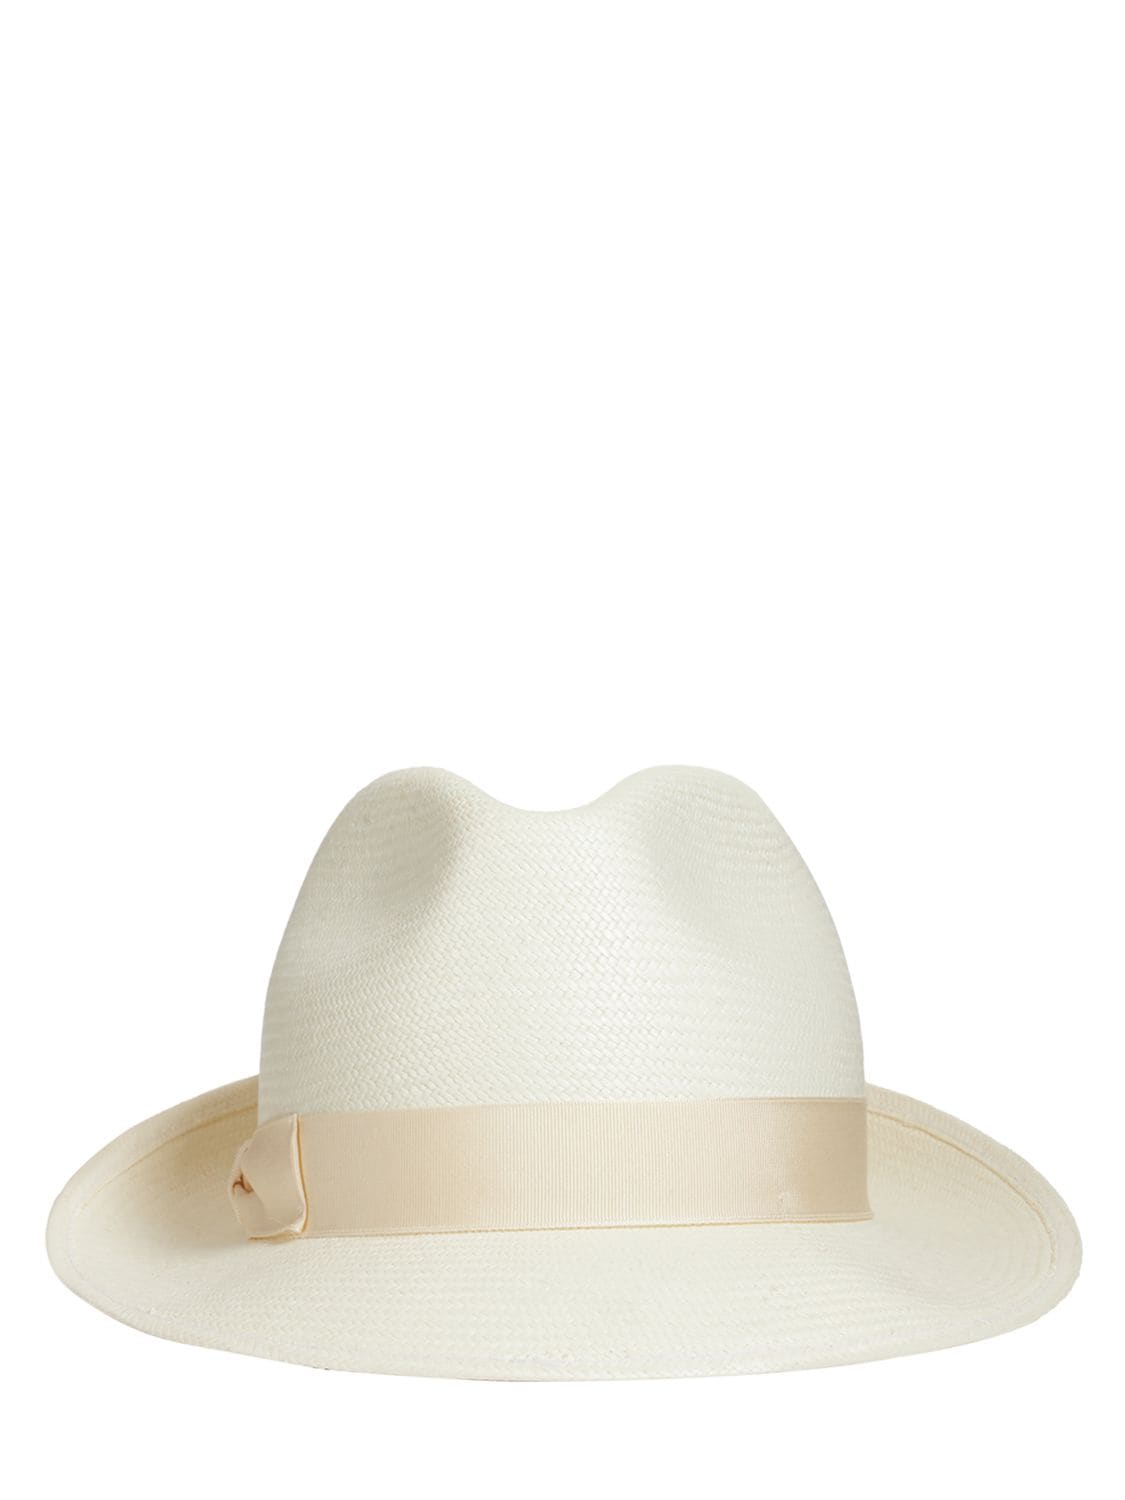 BORSALINO Monica Fine Panama Straw Hat